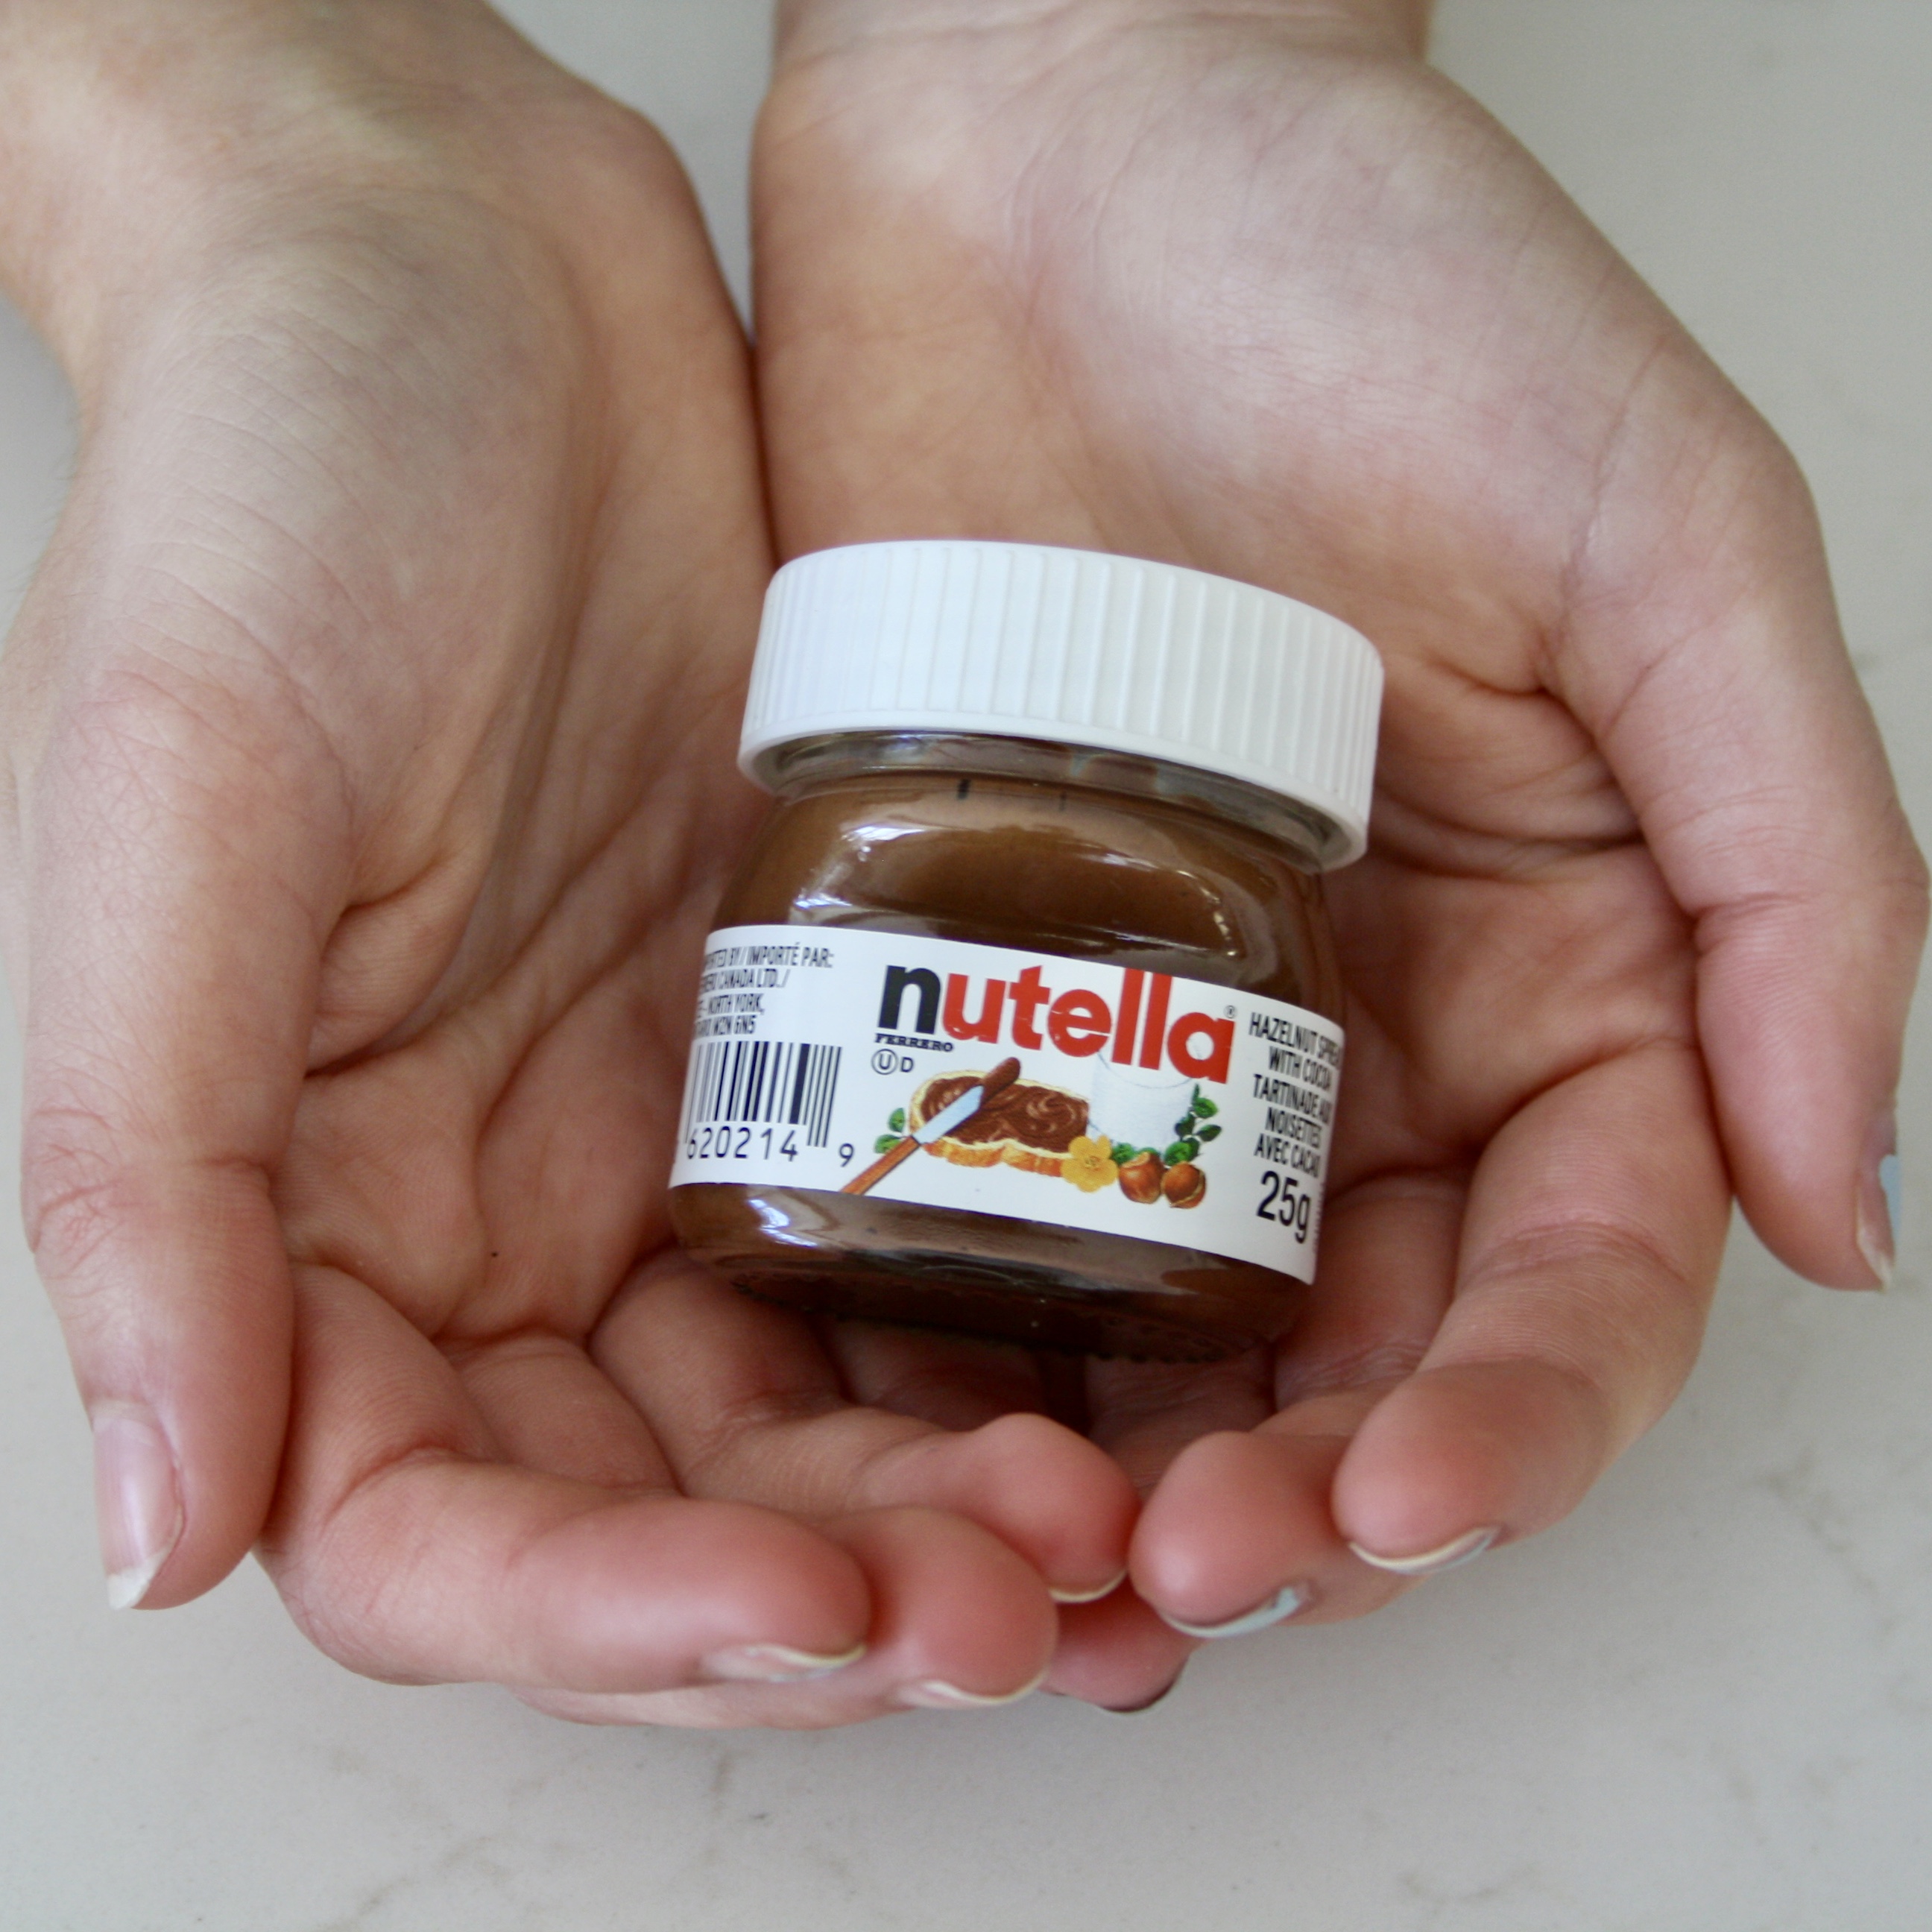 Mini Nutella Jars 25g - Nuttelino - Candy Bar Sydney